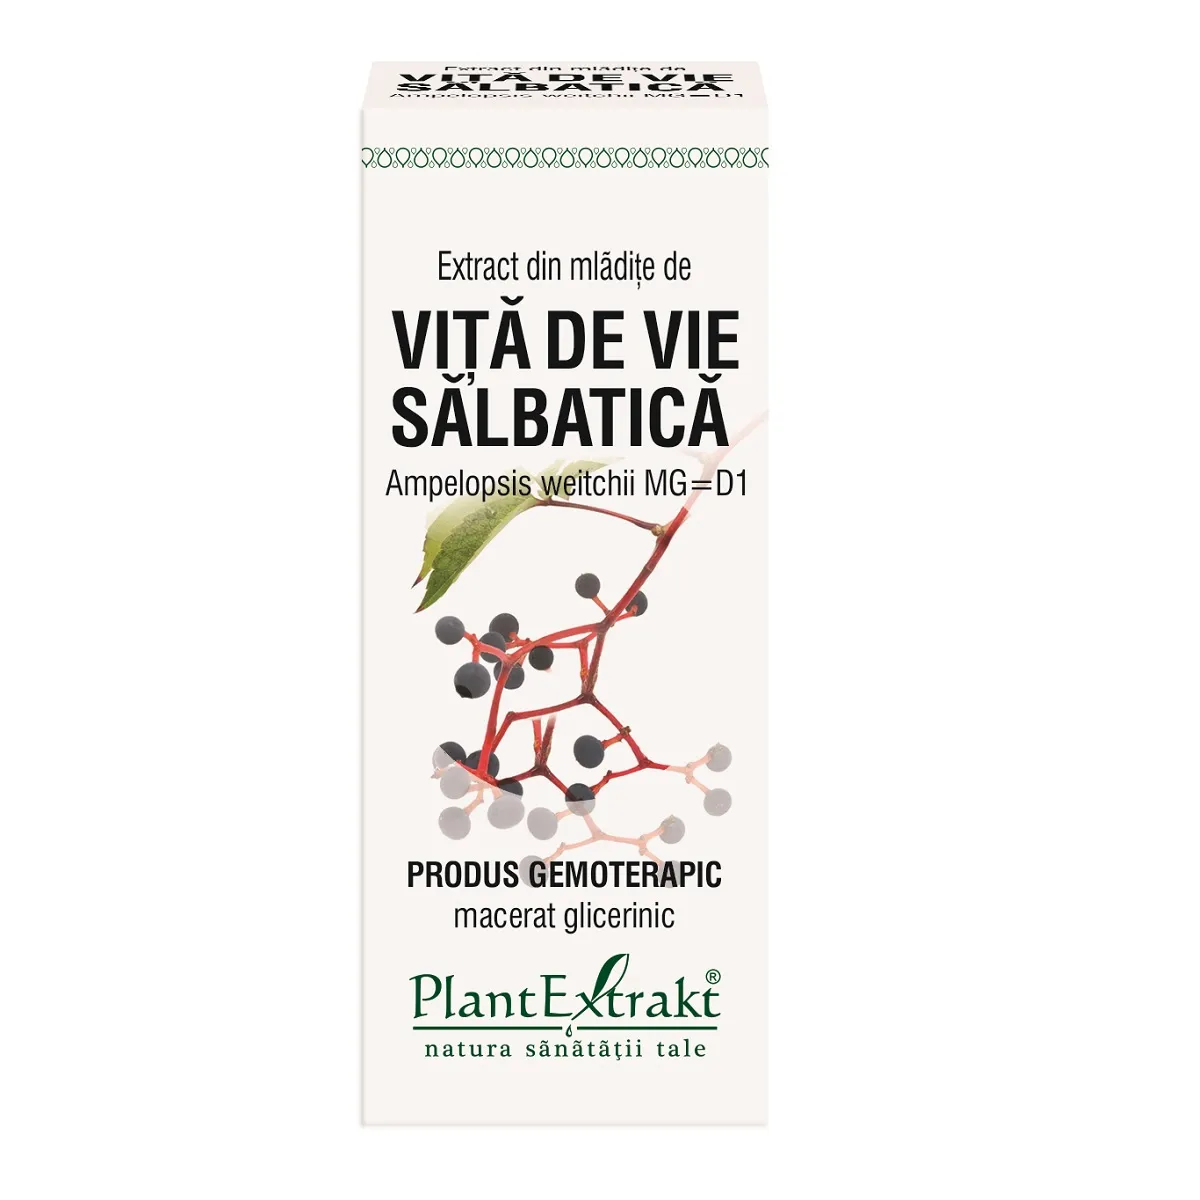 Extract din mladite de vita de vie salbatica, 50ml, Plantextrakt